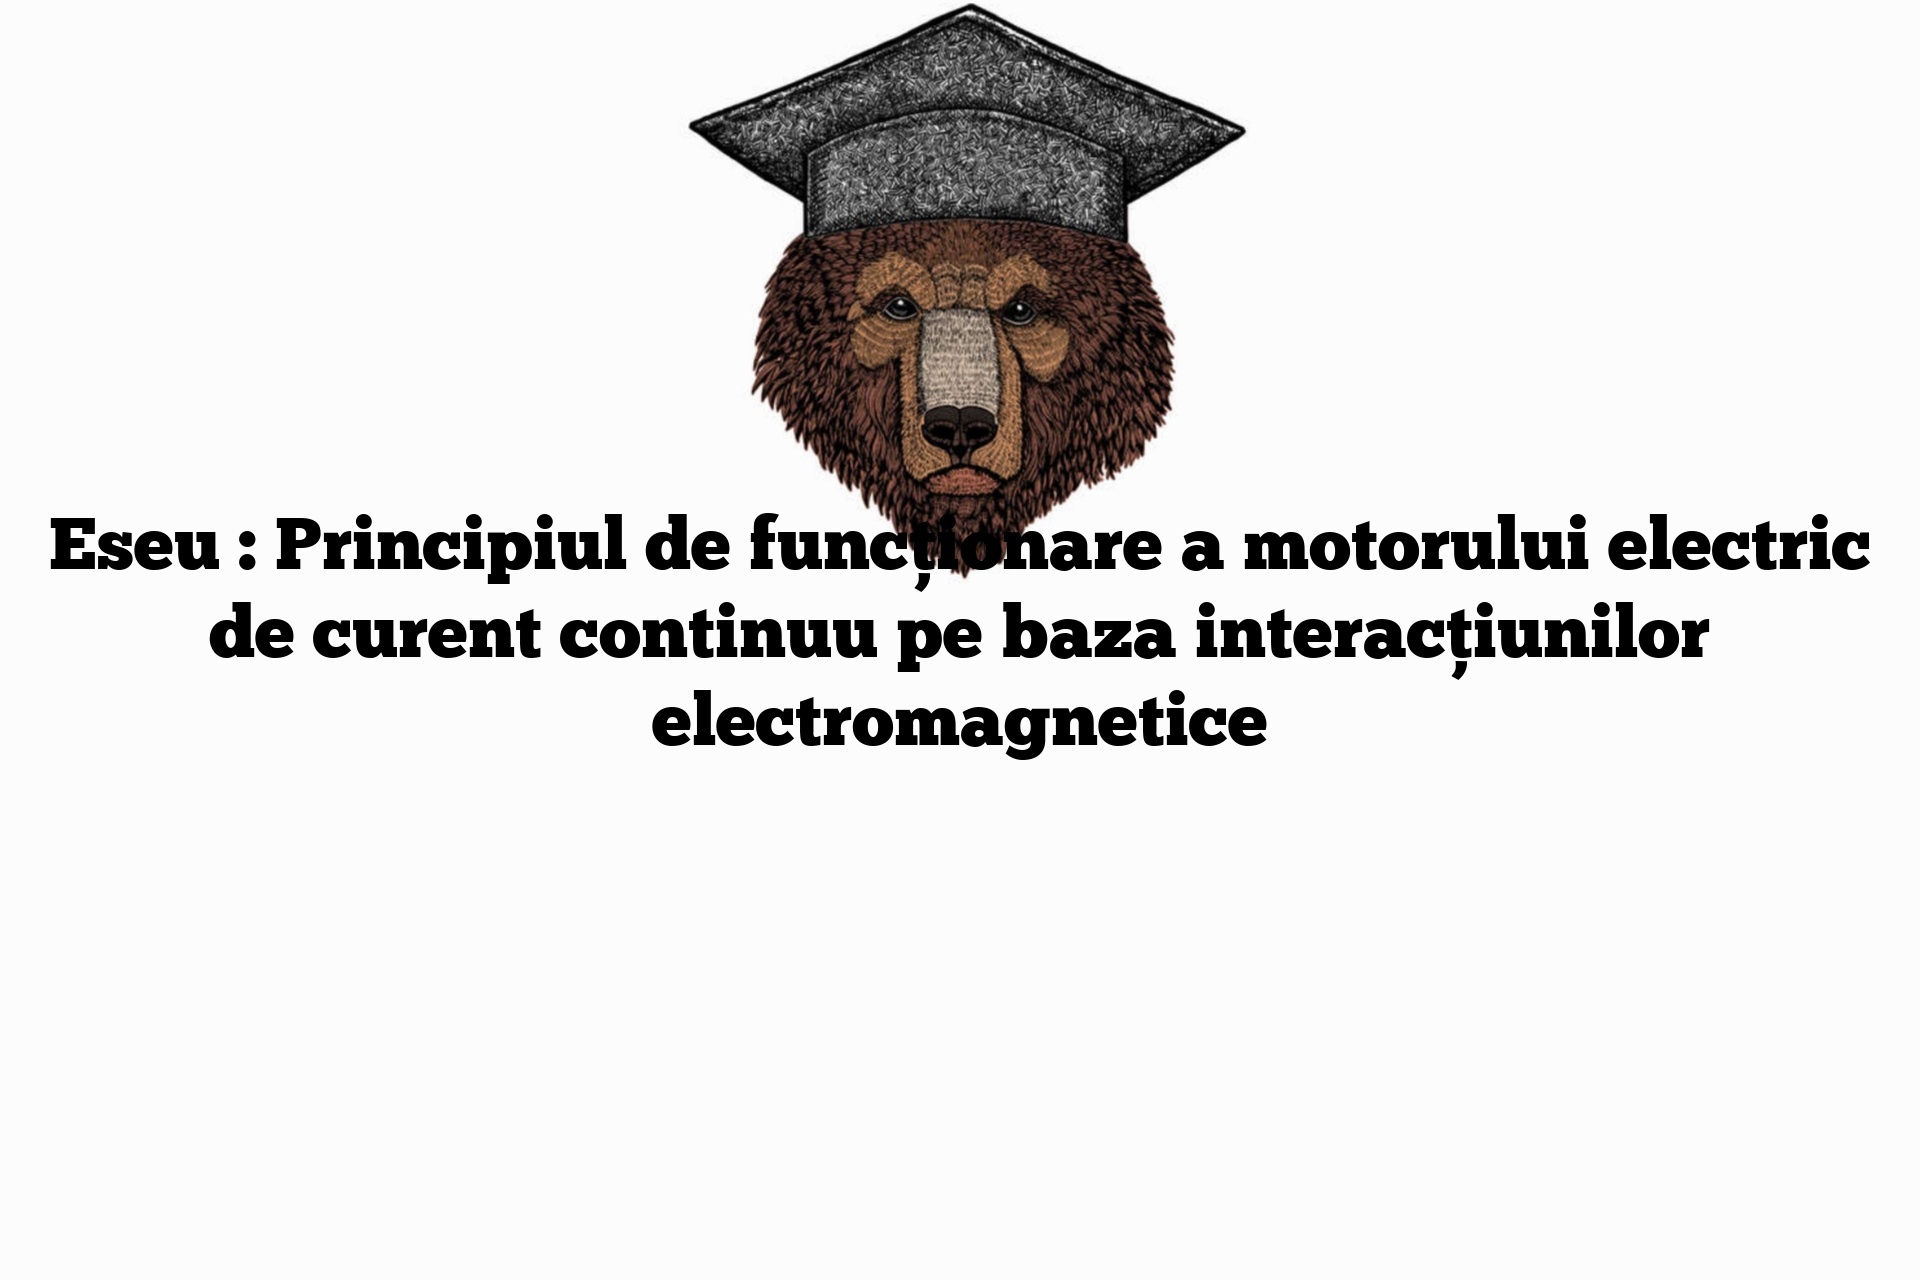 Eseu : Principiul de funcționare a motorului electric de curent continuu pe baza interacțiunilor electromagnetice